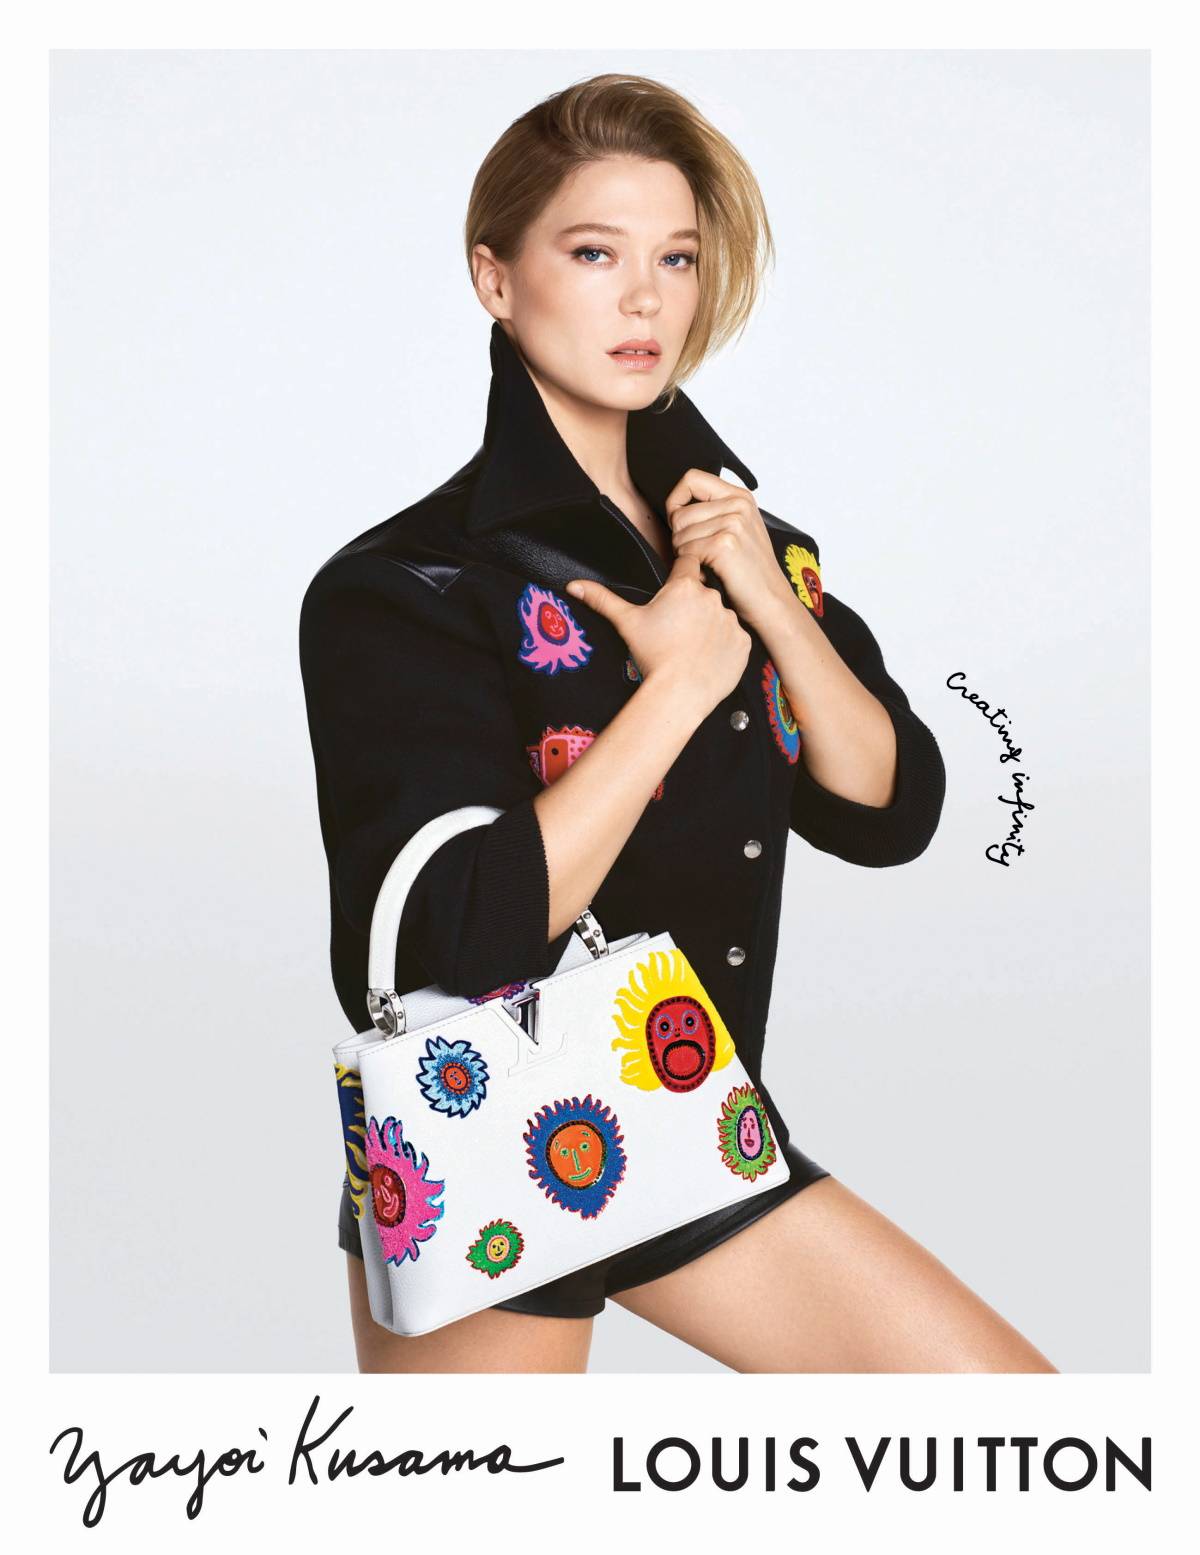 Druga odsłona kolekcji Louis Vuitton x Yayoi Kusama trafiła do sklepów 21 marca 2023 r. W kampanii marki wystąpila m.in. Léa Seydoux.